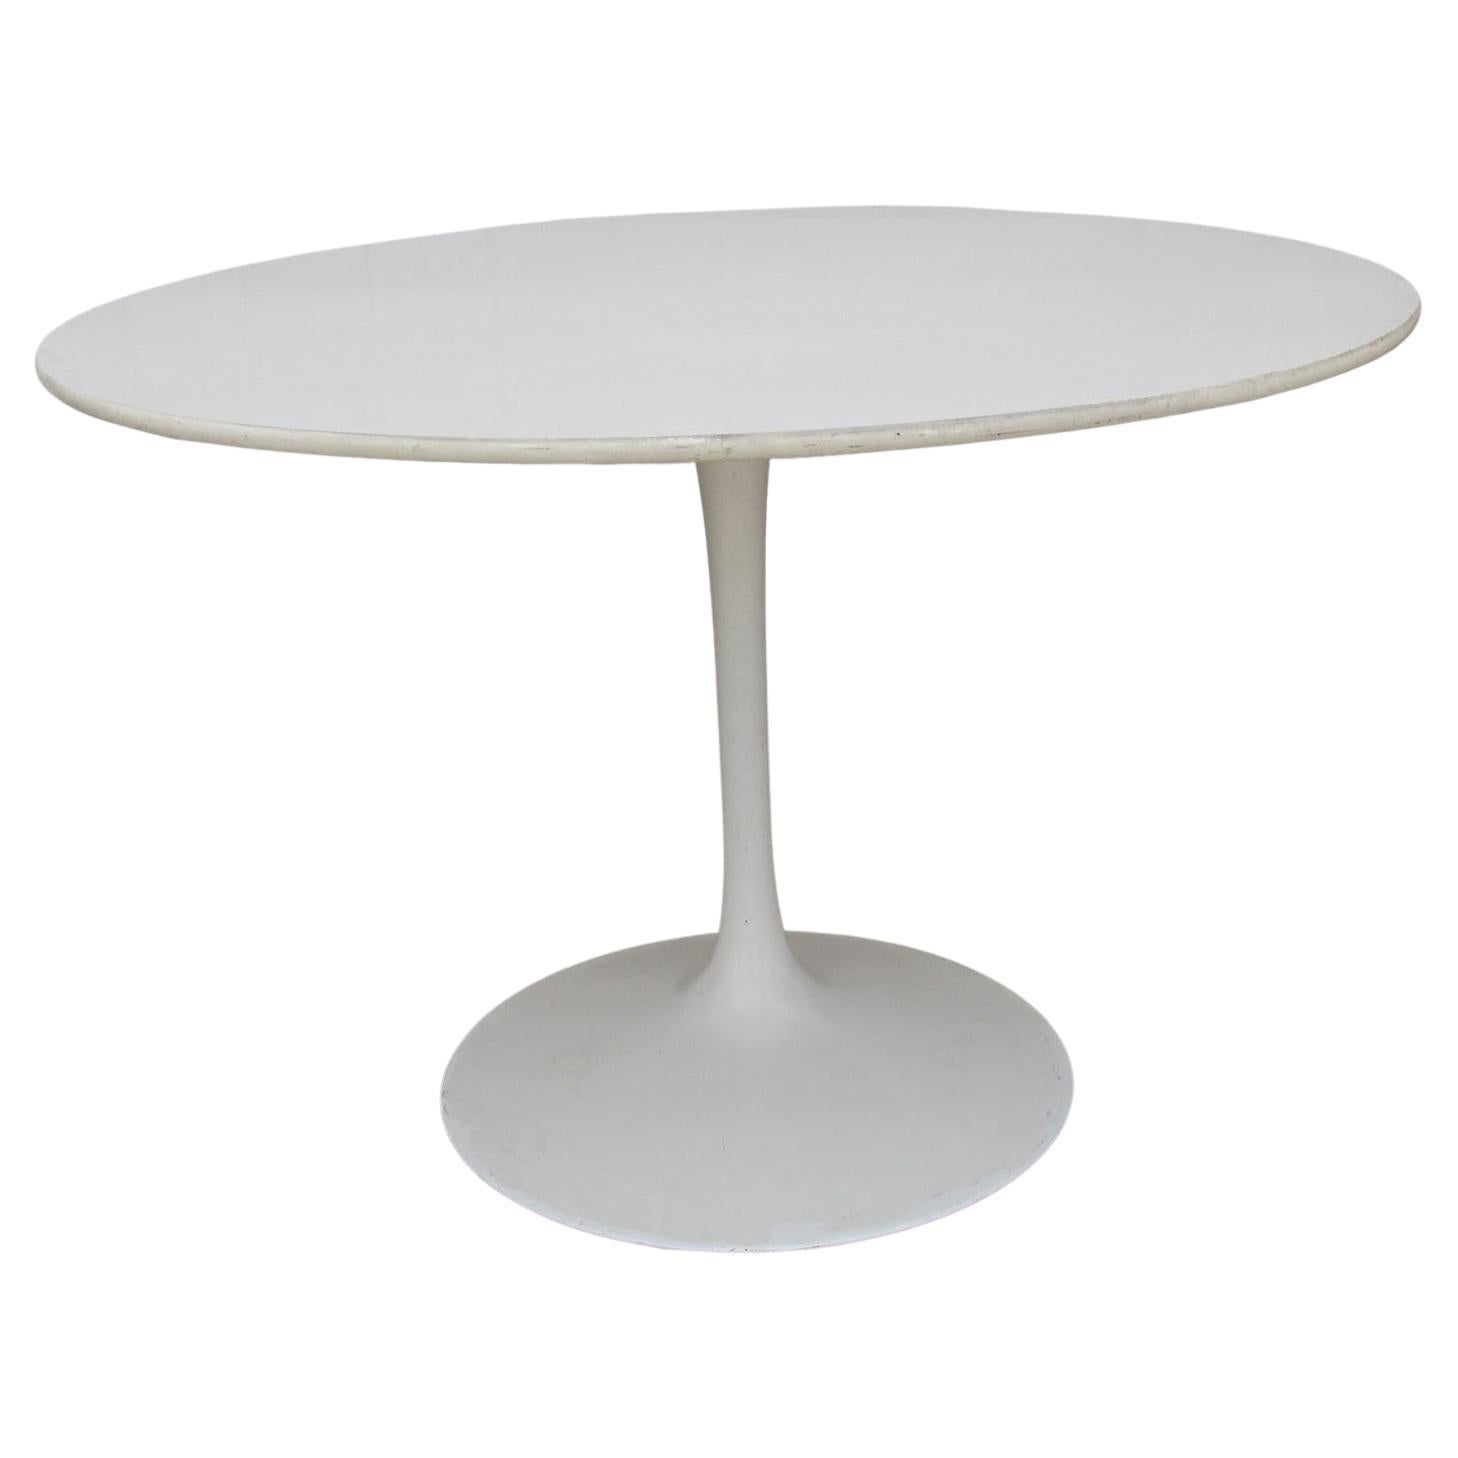 42" Saarinen Style Tulip Table 